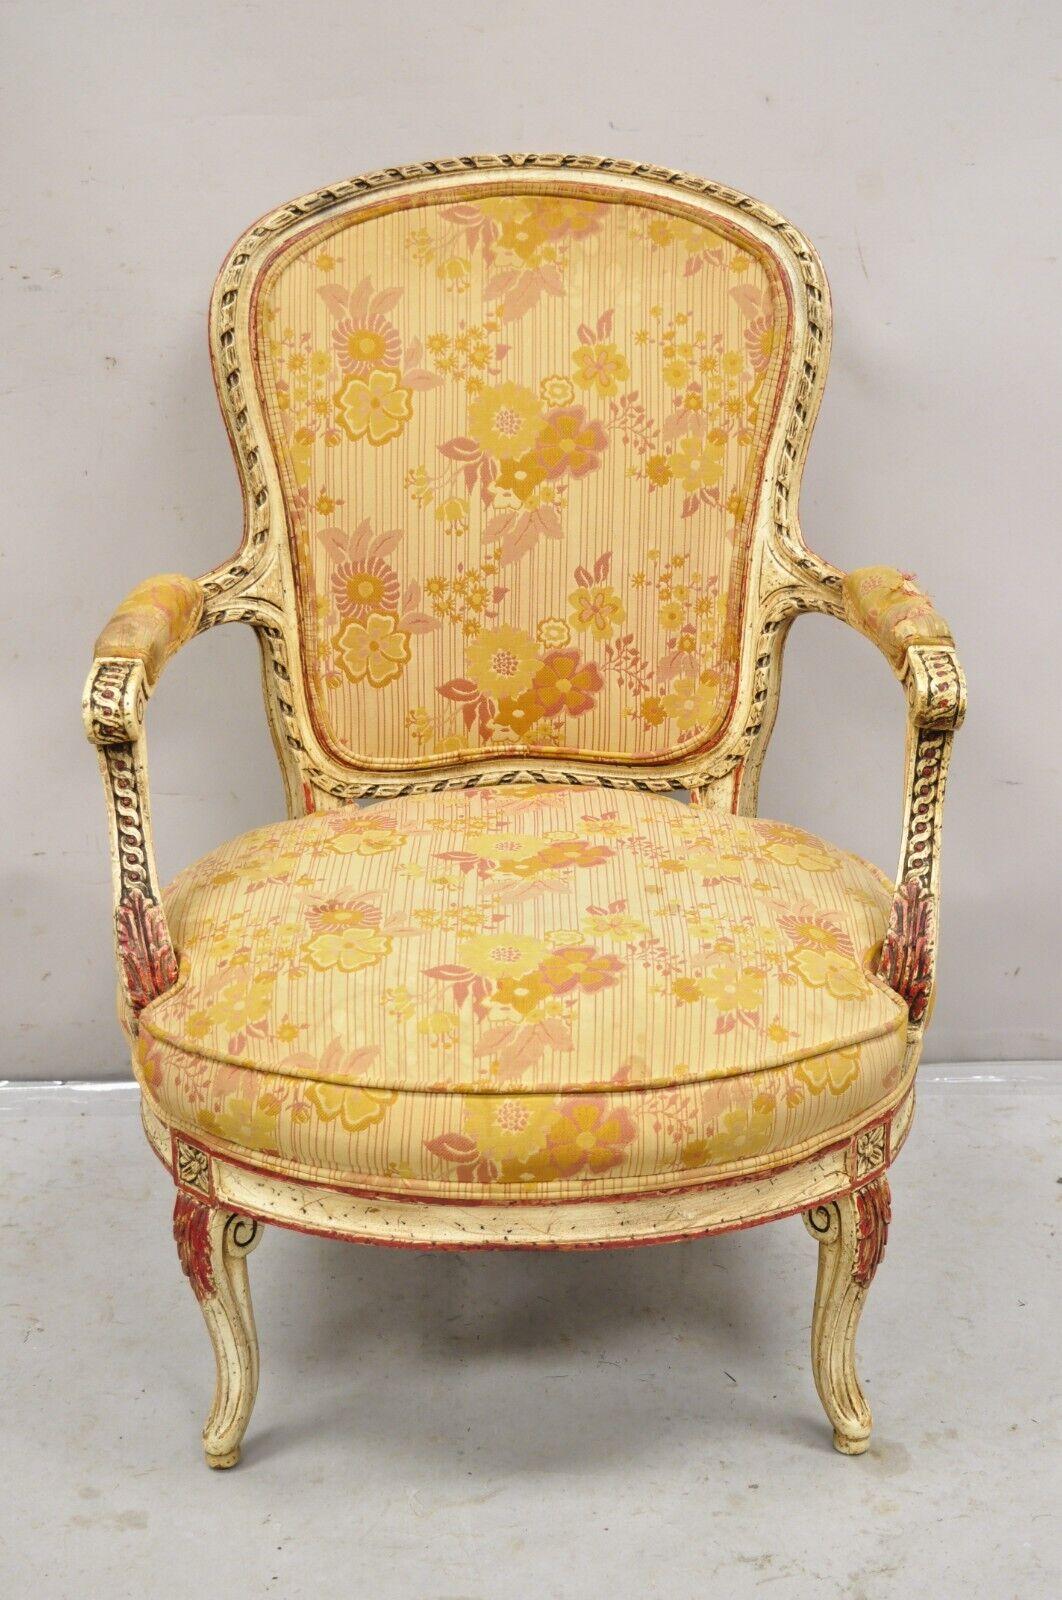 Vintage Französisch Louis XV Stil Creme und rot lackiert Low Seat Boudoir Fauteuil Sessel. Circa Mitte des 20. Jahrhunderts.
Abmessungen: 35